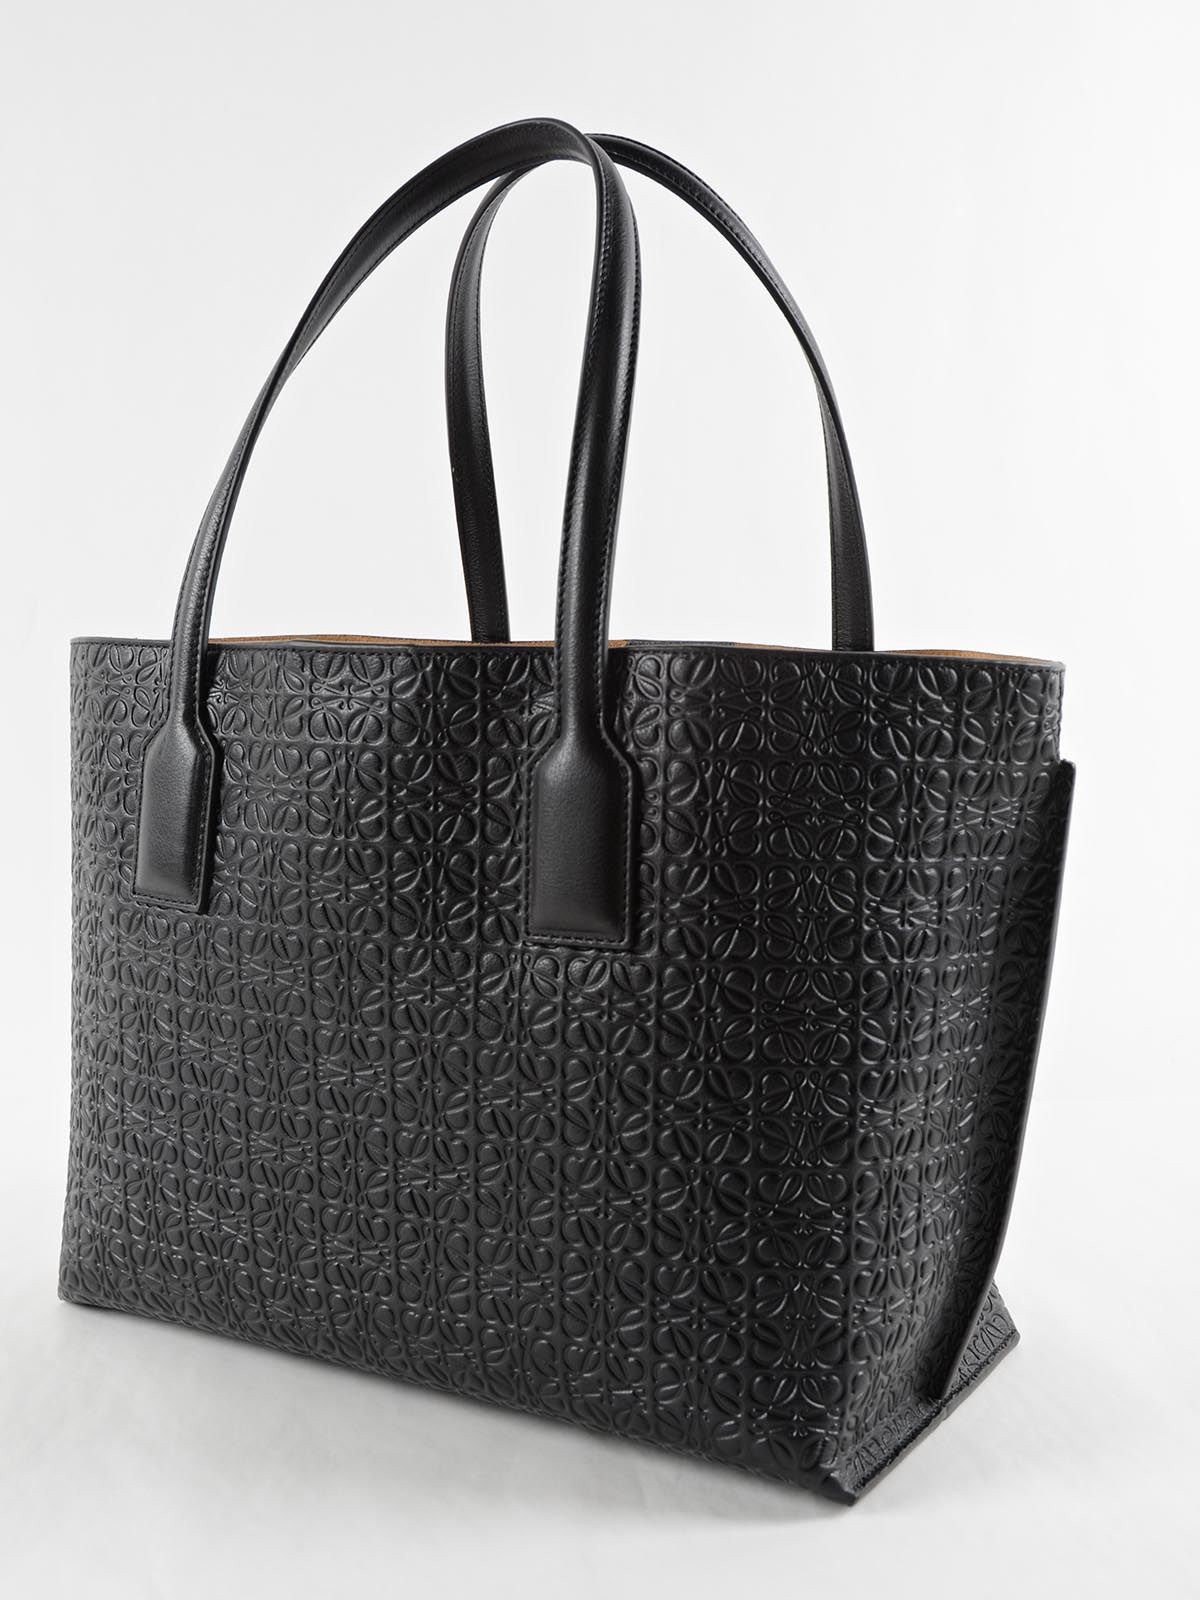 Loewe - Loewe T Shopper Bag - Black, Women's Totes | Italist